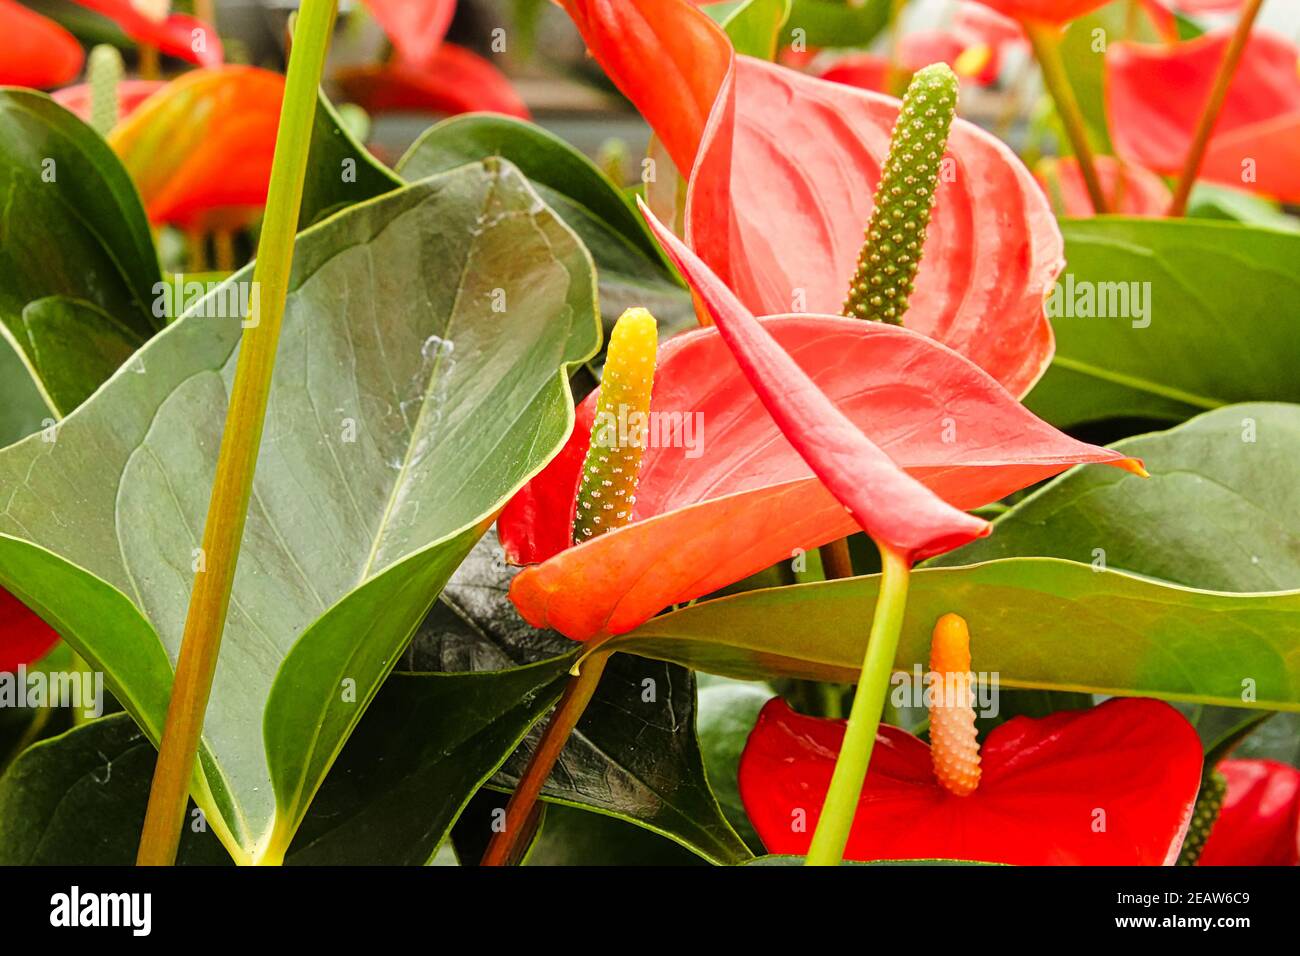 L'anthurium spadix d'orange et la spae poussent sur des plantes Banque D'Images